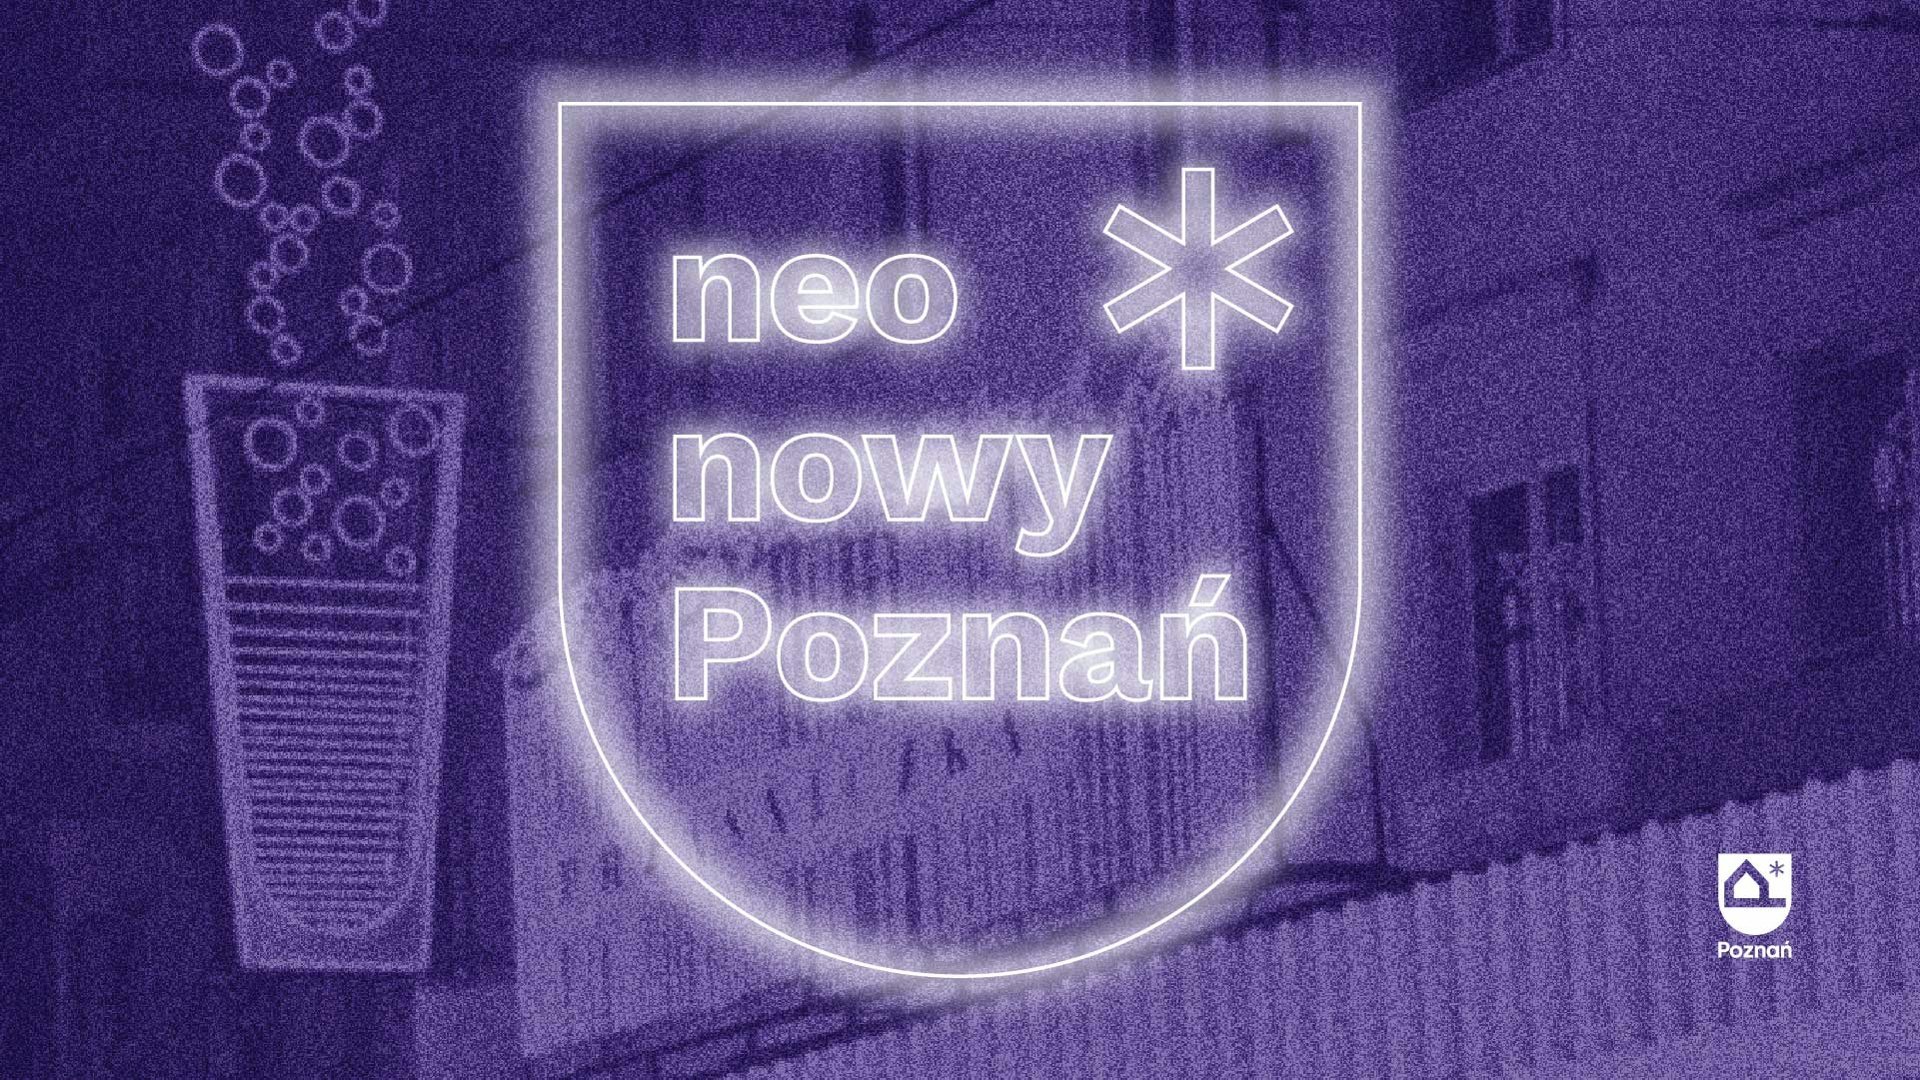 Grafika z napisem "Neo nowy Poznań".